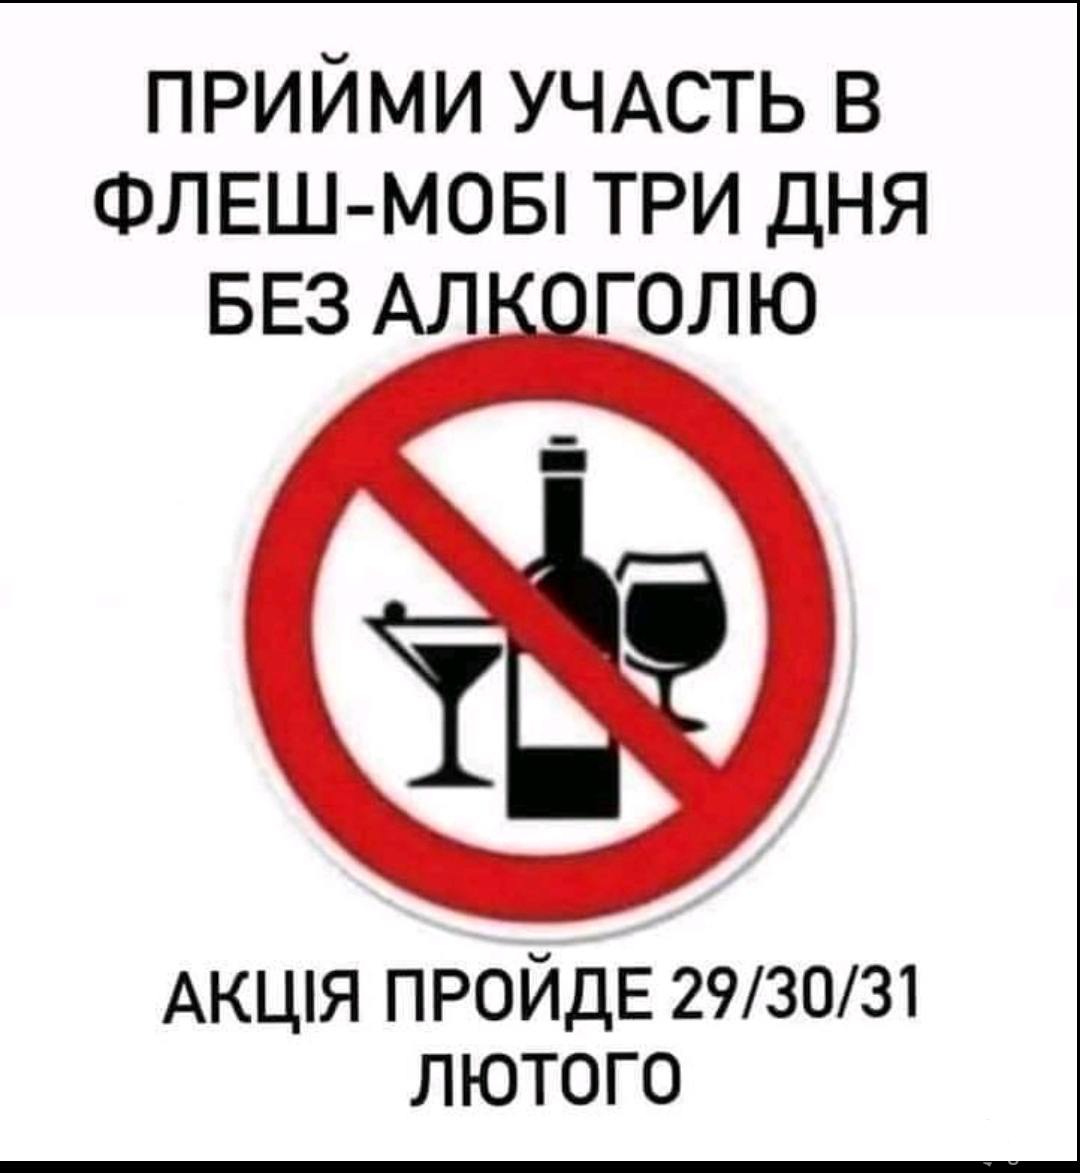 145250 - Пить или не пить? - пятничная алкогольная тема )))